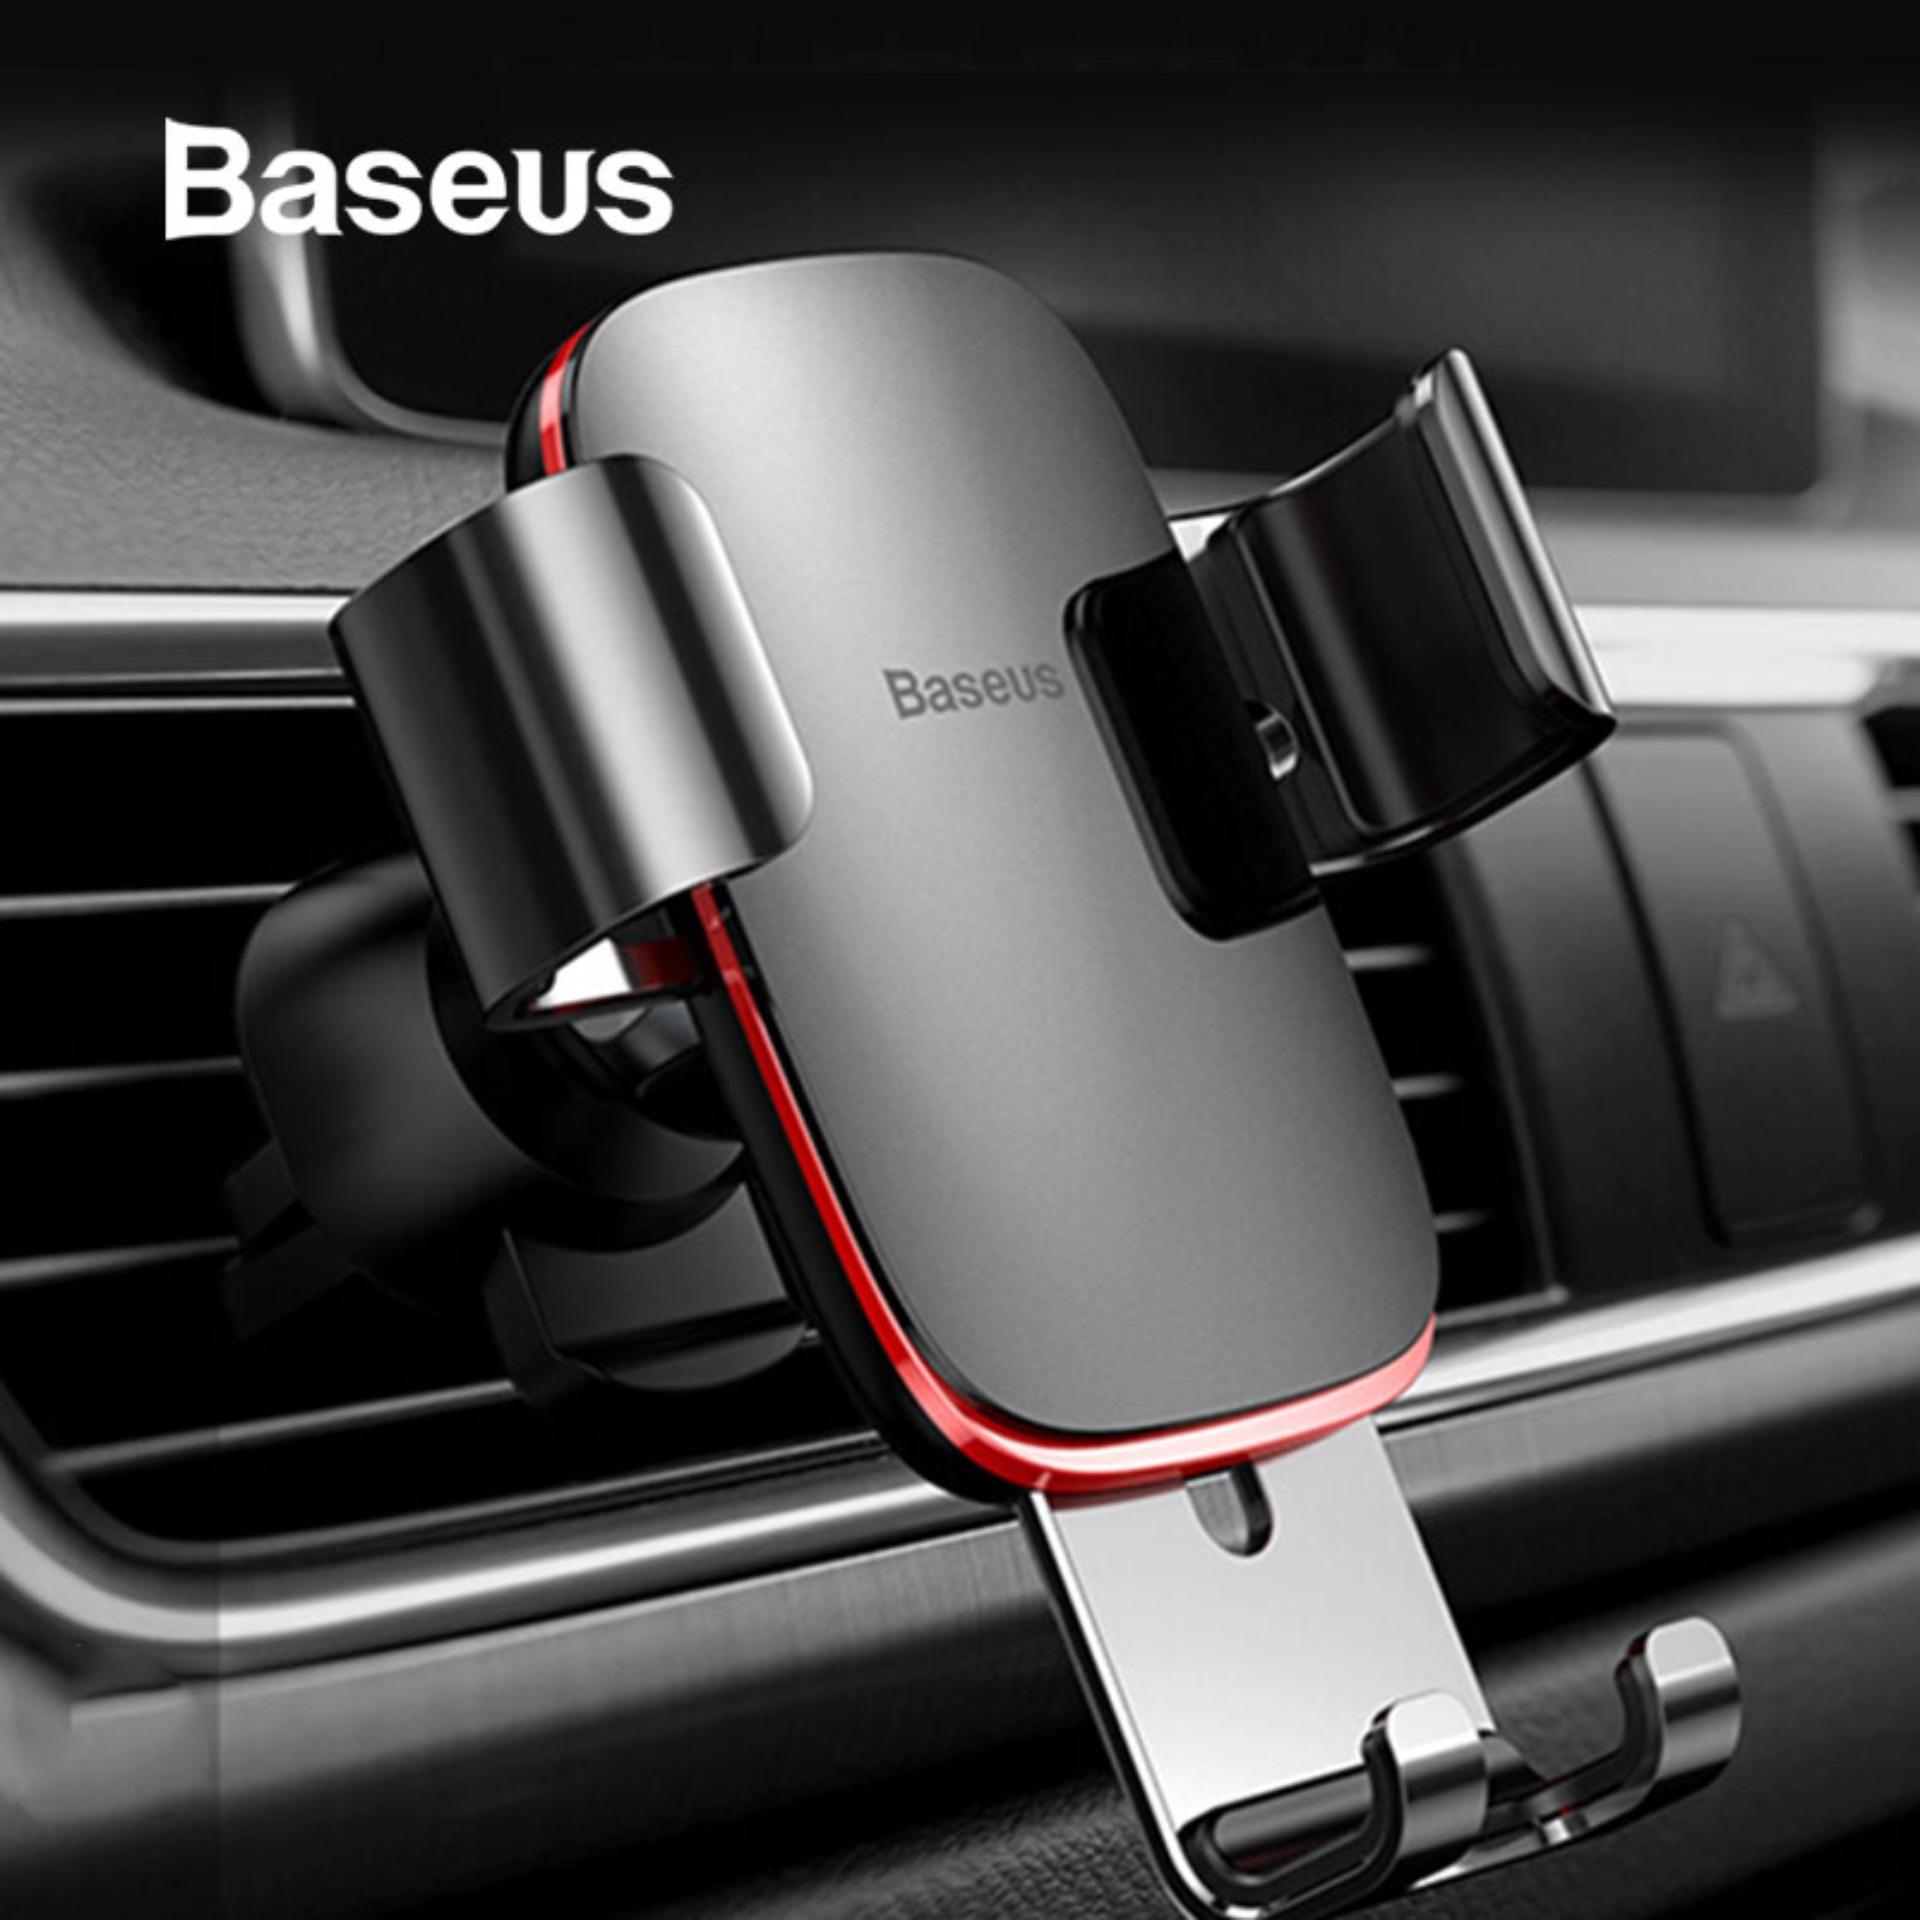 Baseus ที่วางโทรศัพท์มือถือในรถยนต์พรีเมี่ยม เสียบช่องแอร์แบบหนีบ อุปกรณ์จับยึดมือถือคุณภาพสูง ช่องแอร์รถยนต์ ขายึดมือถือในรถยนต์ (มี 4 สี) Baseus Universal Car Phone Holder